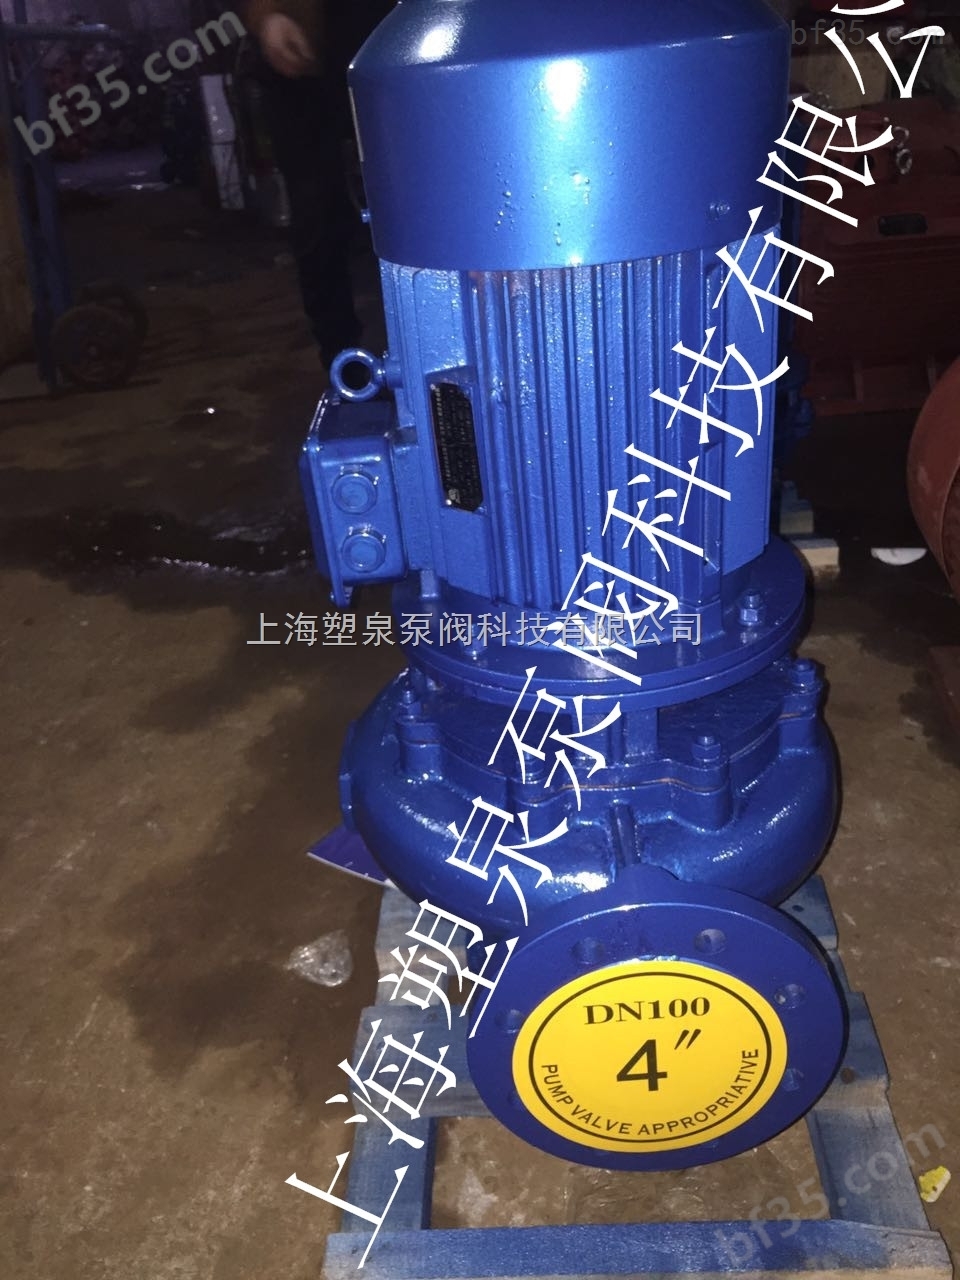 供应立式单级管道泵 立式单级管道泵 立式单级管道泵厂家